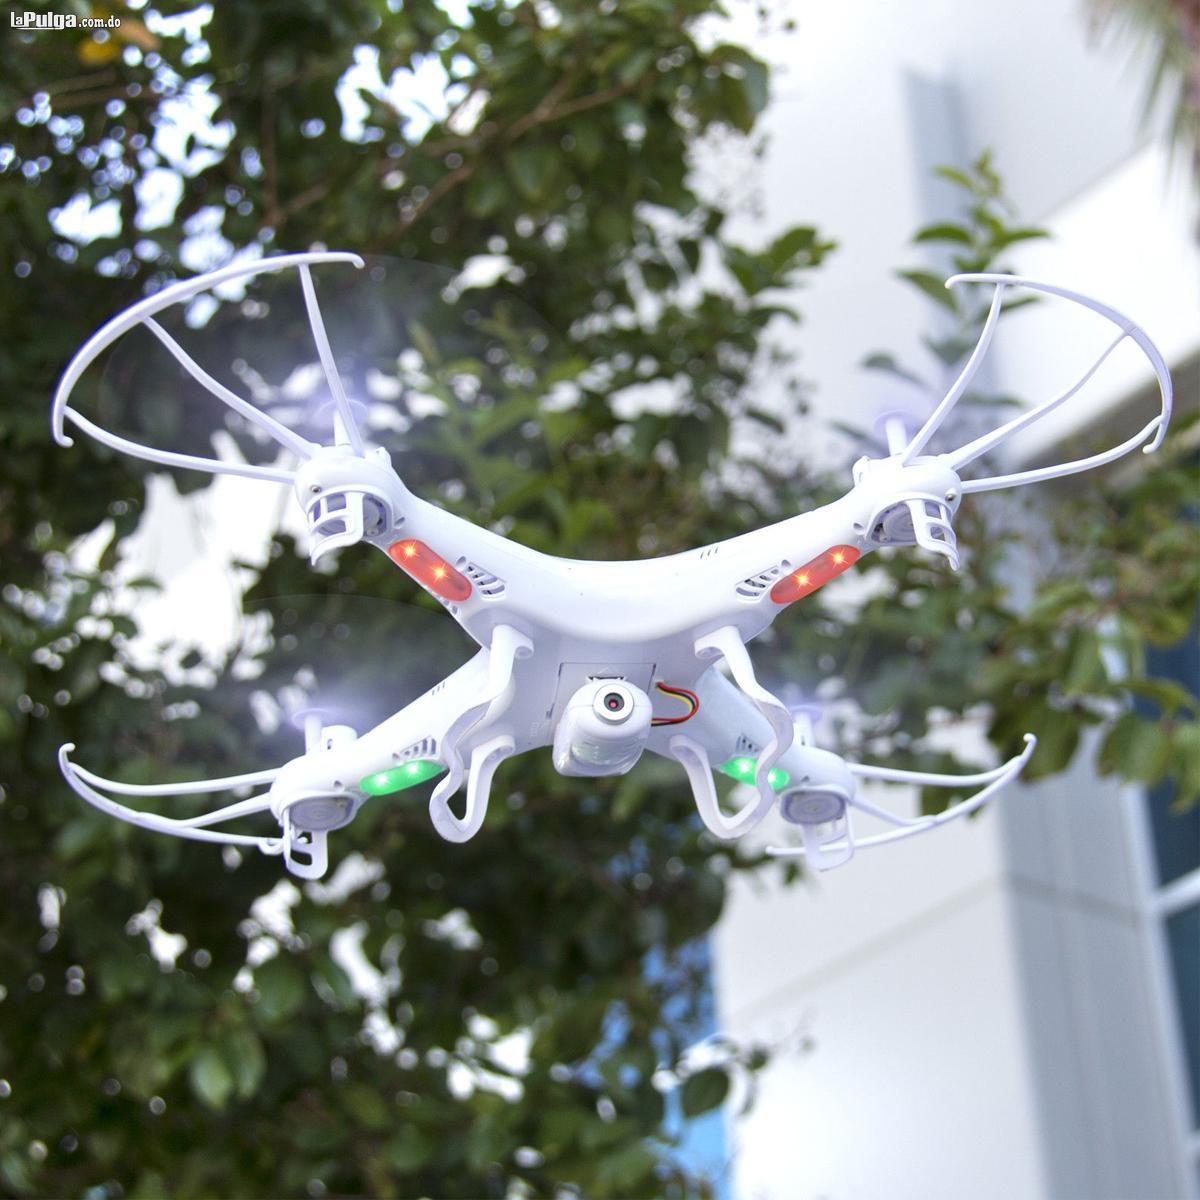 Drone Syma X5sw-v3 Con Cámara Wifi Desde El Celular-tienda- Foto 6566559-5.jpg